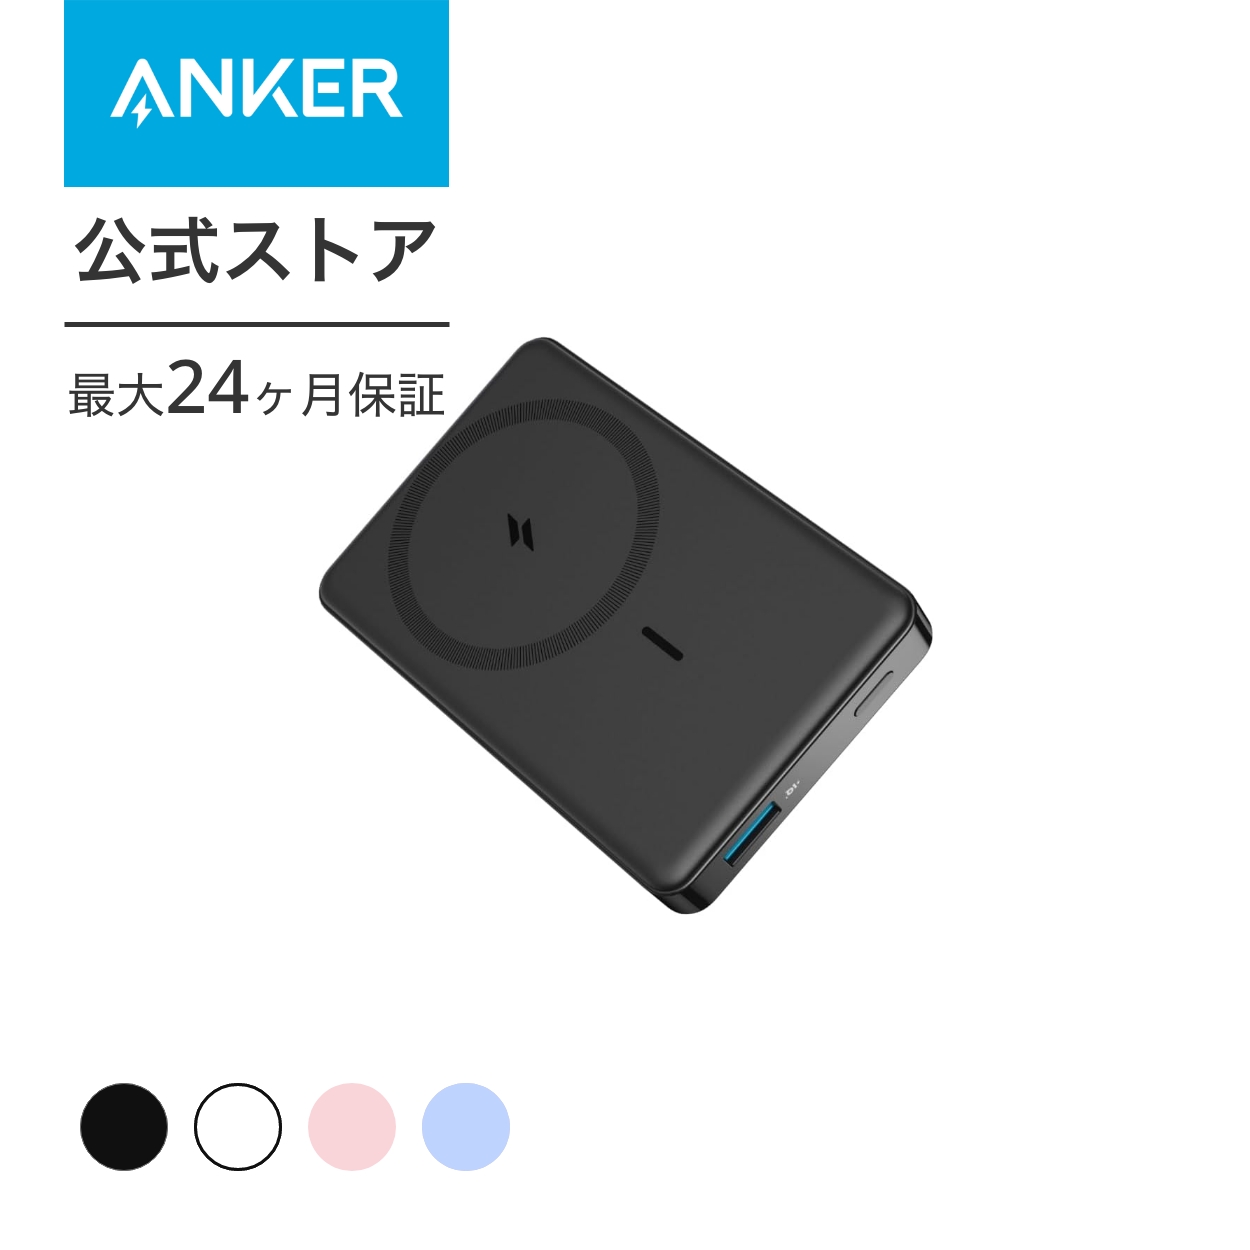 Anker 334 MagGo Battery (PowerCore 10000) (マグネット式ワイヤレス充電対応 10000mAh コンパクト モバイルバッテリー)MagSafe対応iPhoneシリーズ専用